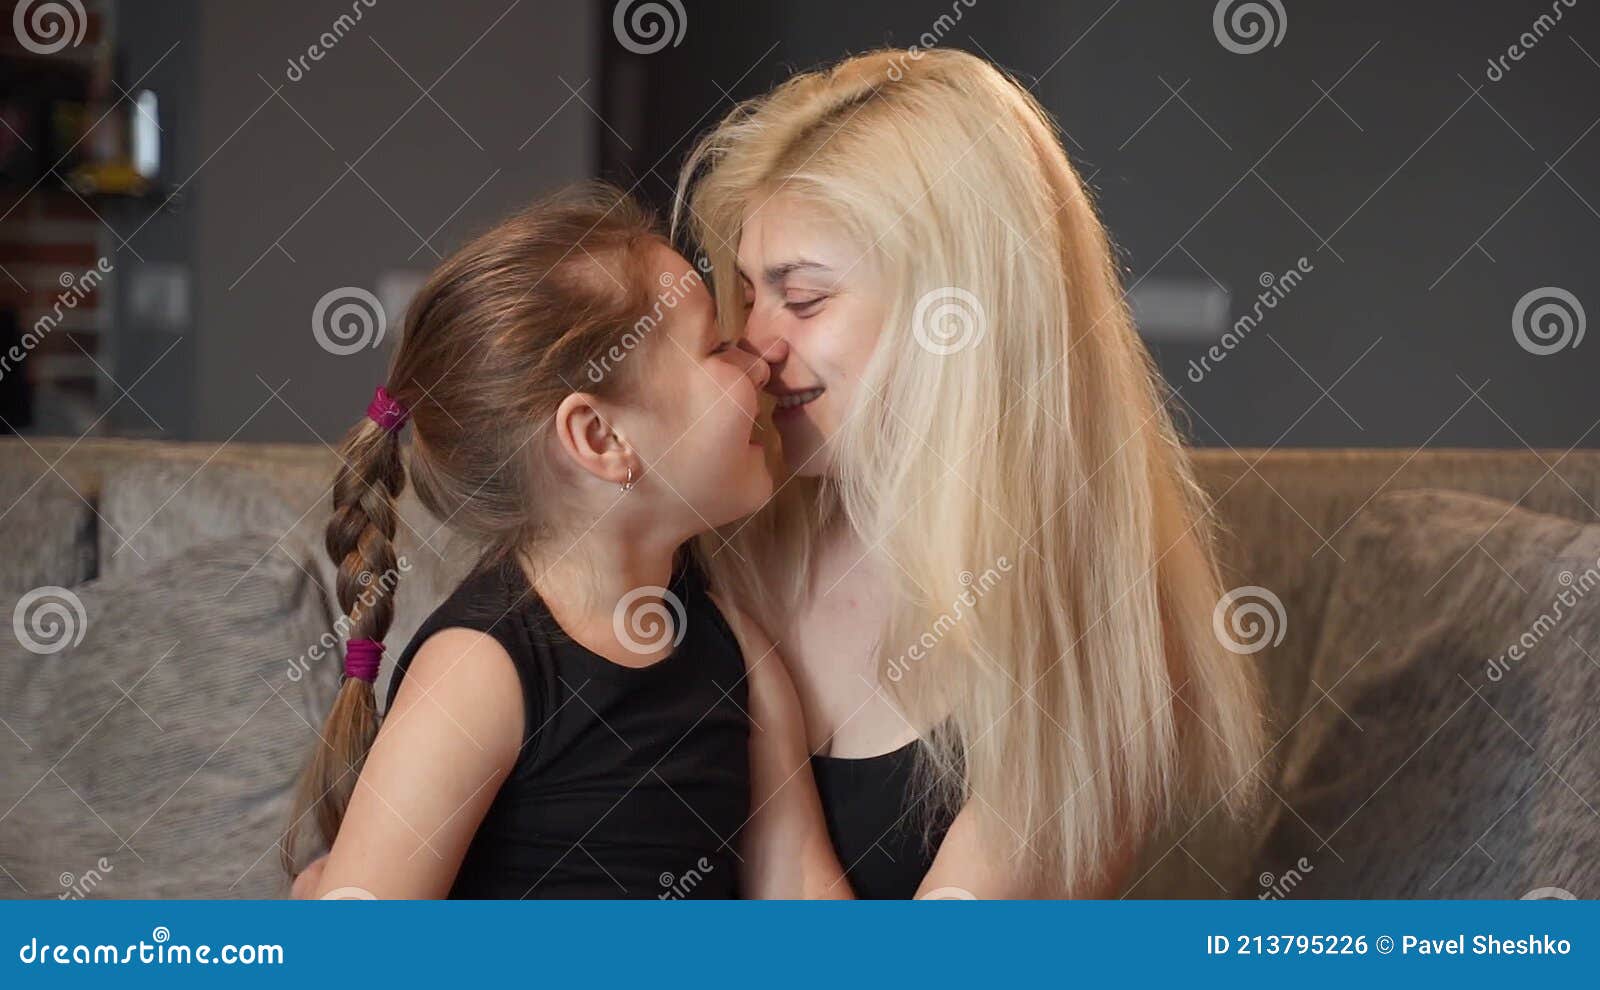 Девушка целует девушку видео